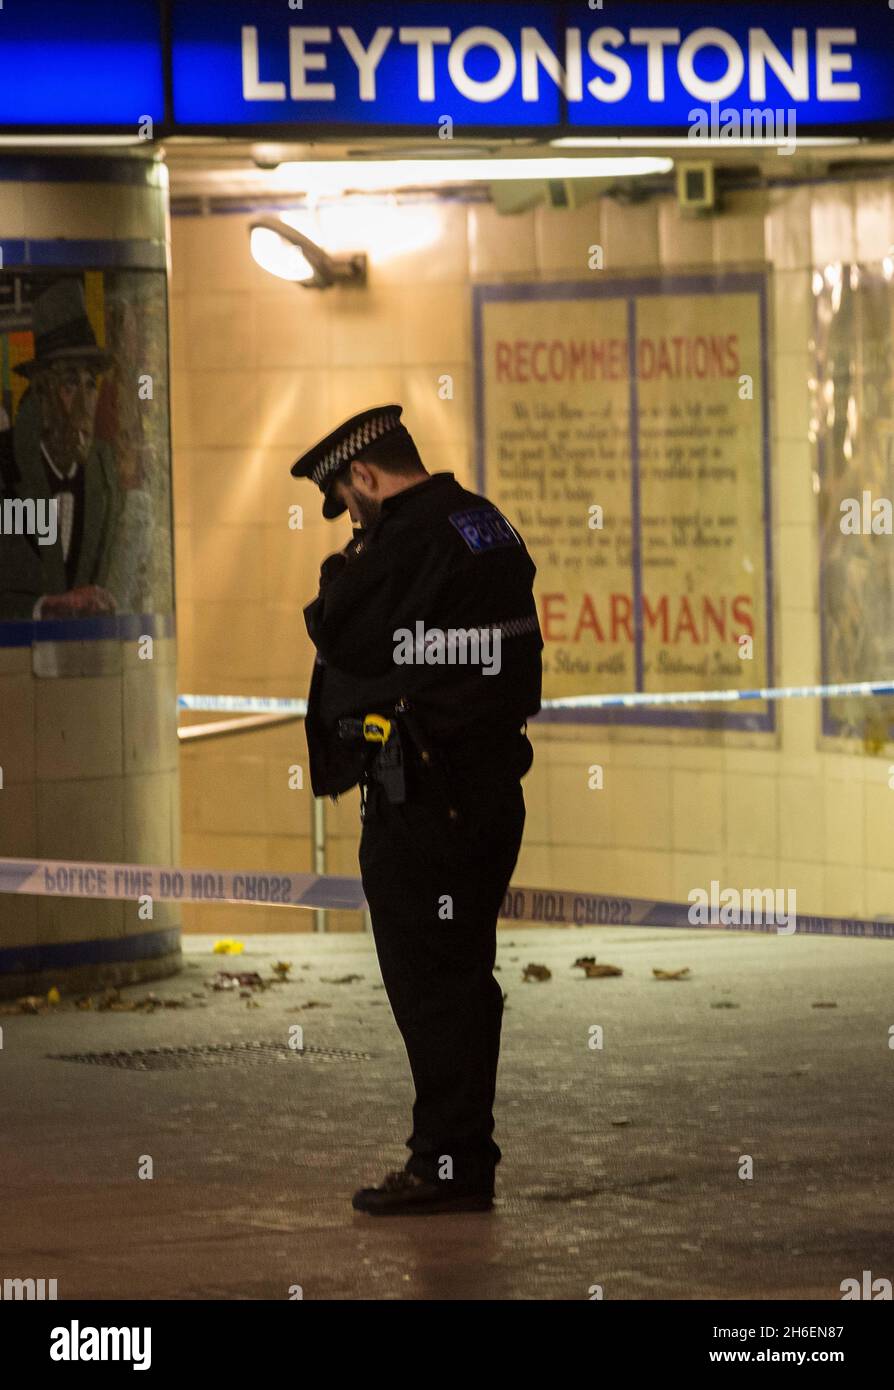 La police à l'extérieur de la station de métro Leytonstone, dans l'est de Londres, à la suite d'une attaque au couteau contre trois personnes à la station qui est traitée comme un incident terroriste, ont déclaré la police. Banque D'Images